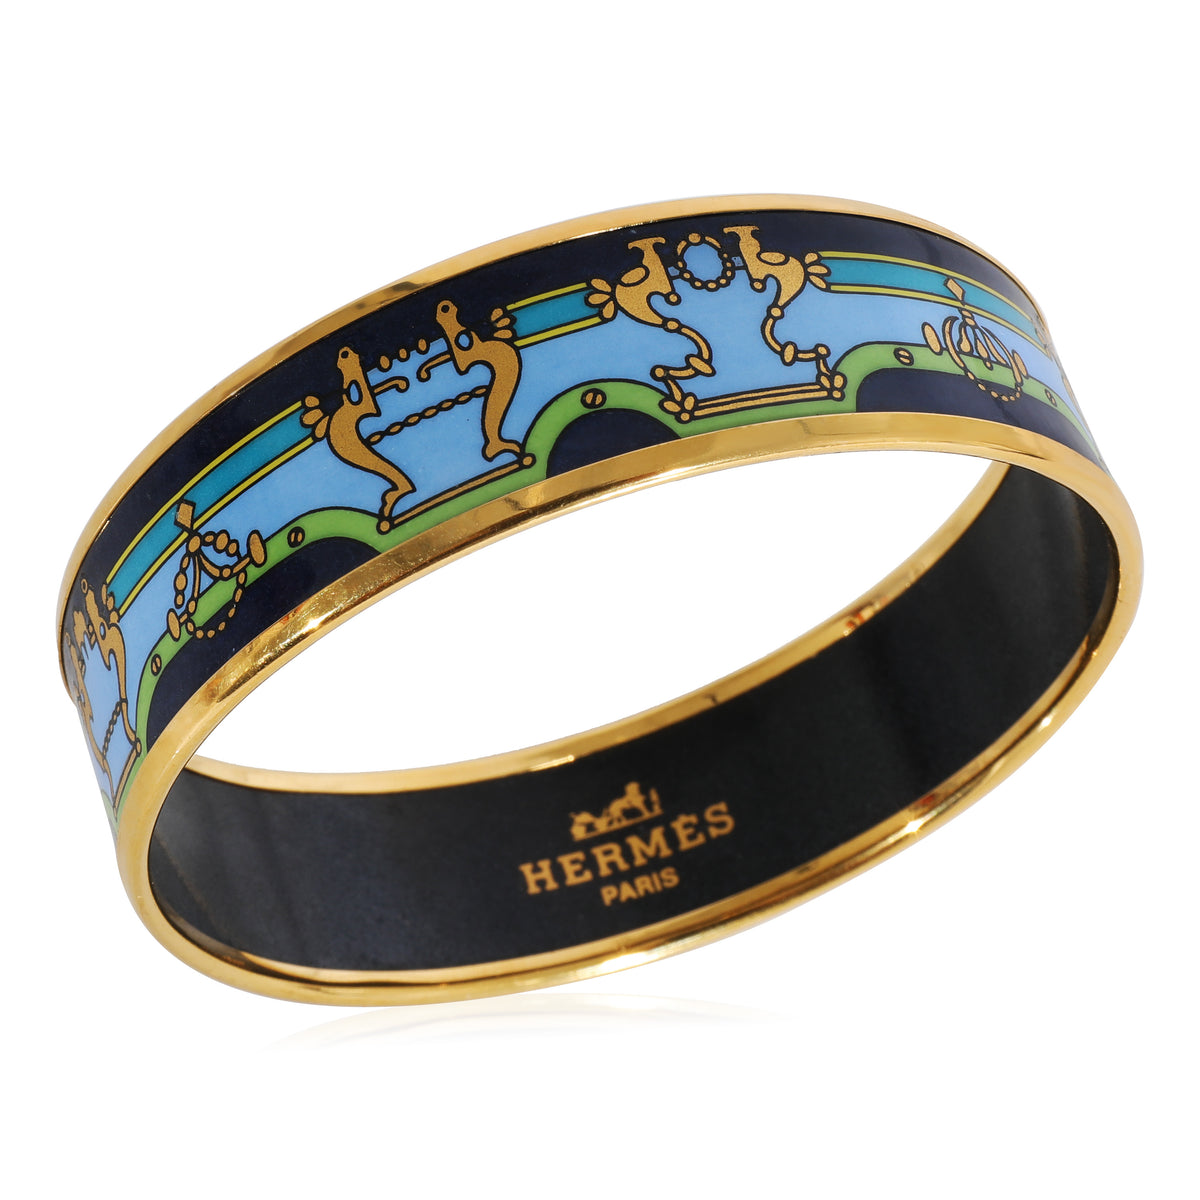 Hermès Plated Enamel Bracelet with Blue, Green & Gold  Design (62MM)